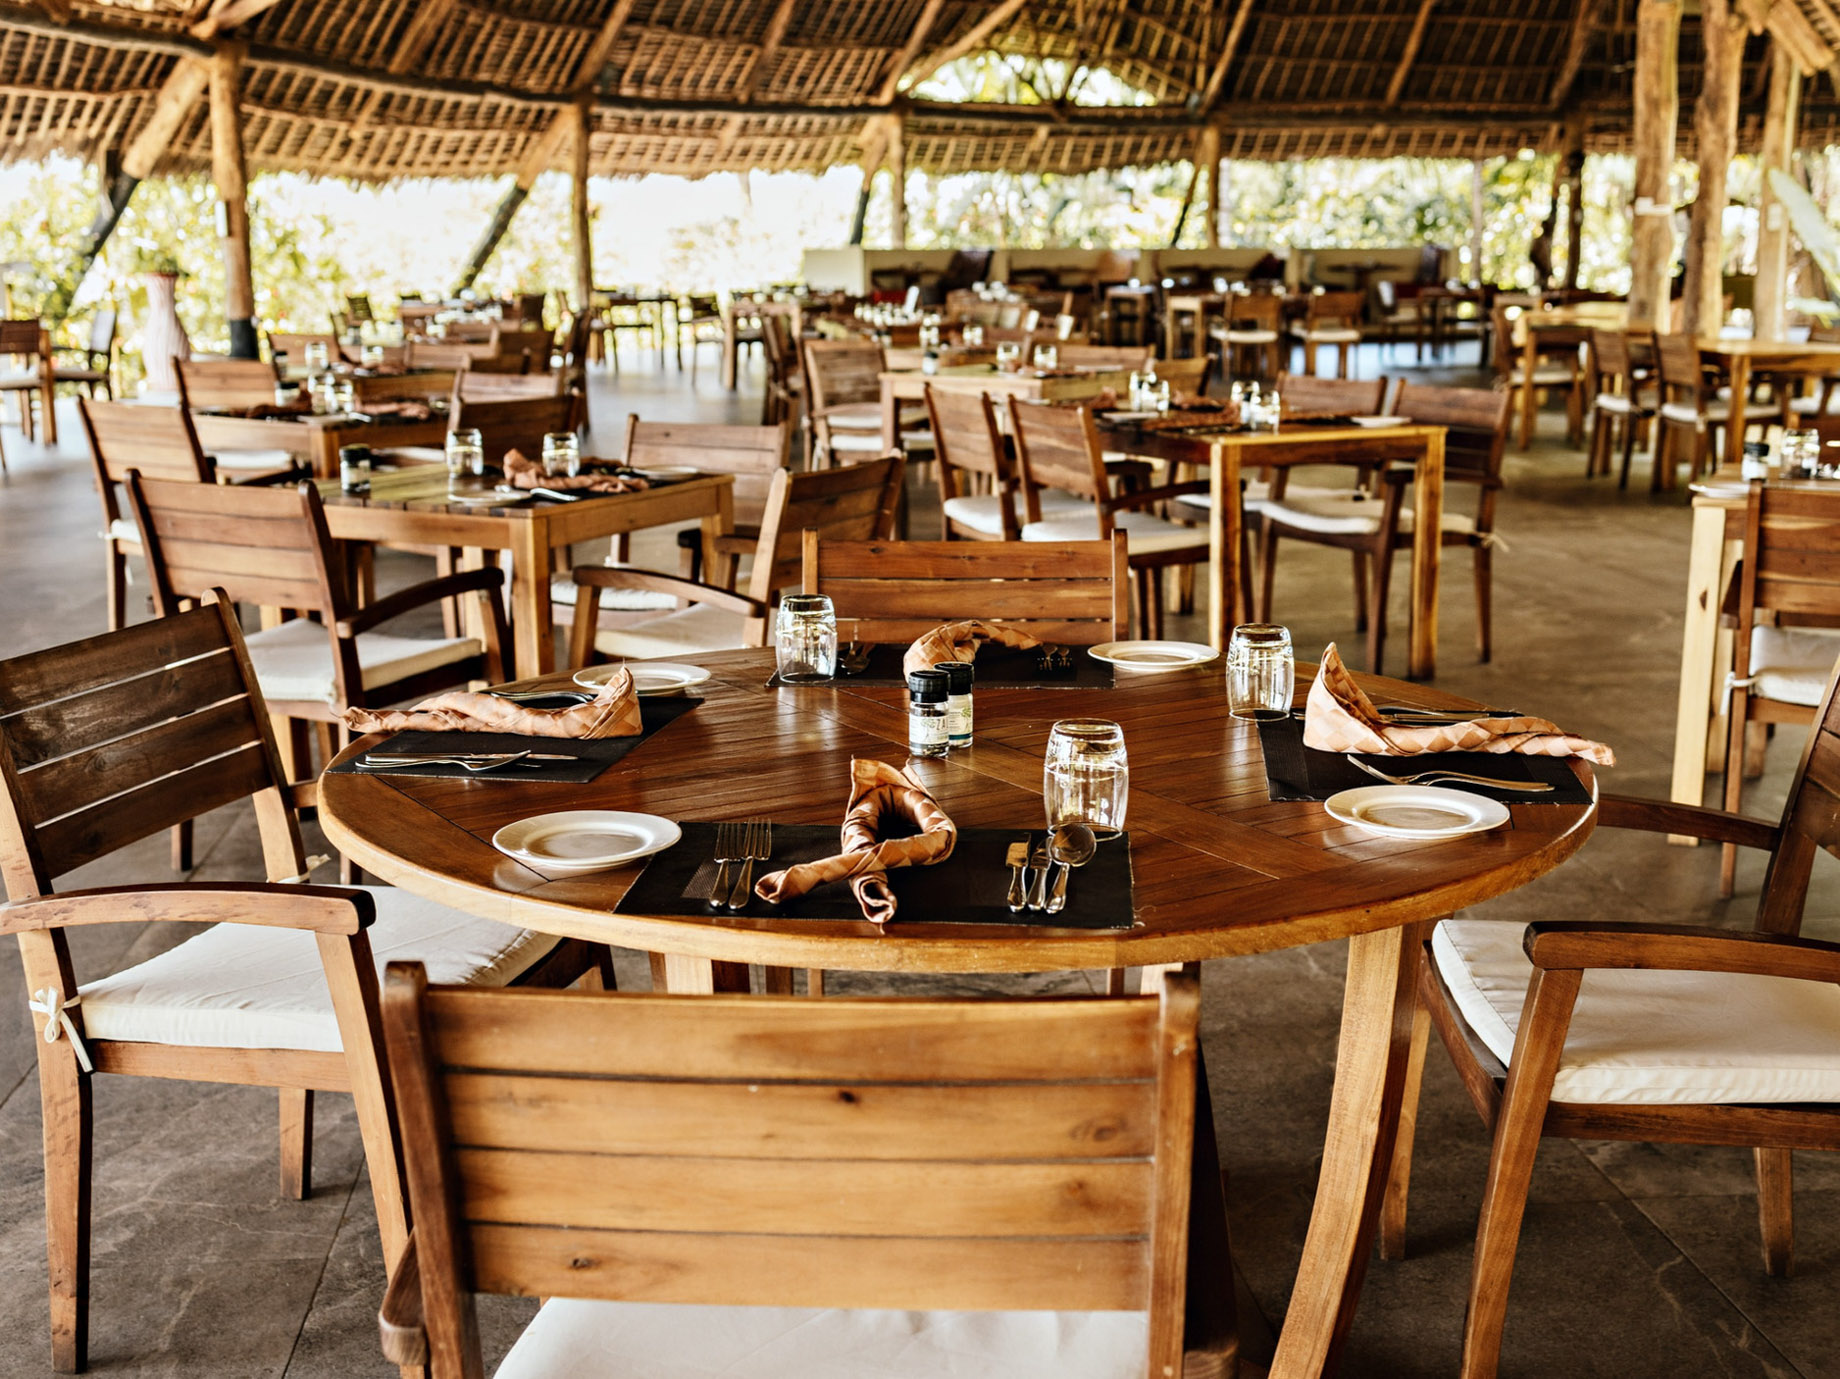 Gold Zanzibar Beach House & Spa Resort – Nungwi, Zanzibar, Tanzania – Kilimanjaro Restaurant Dining